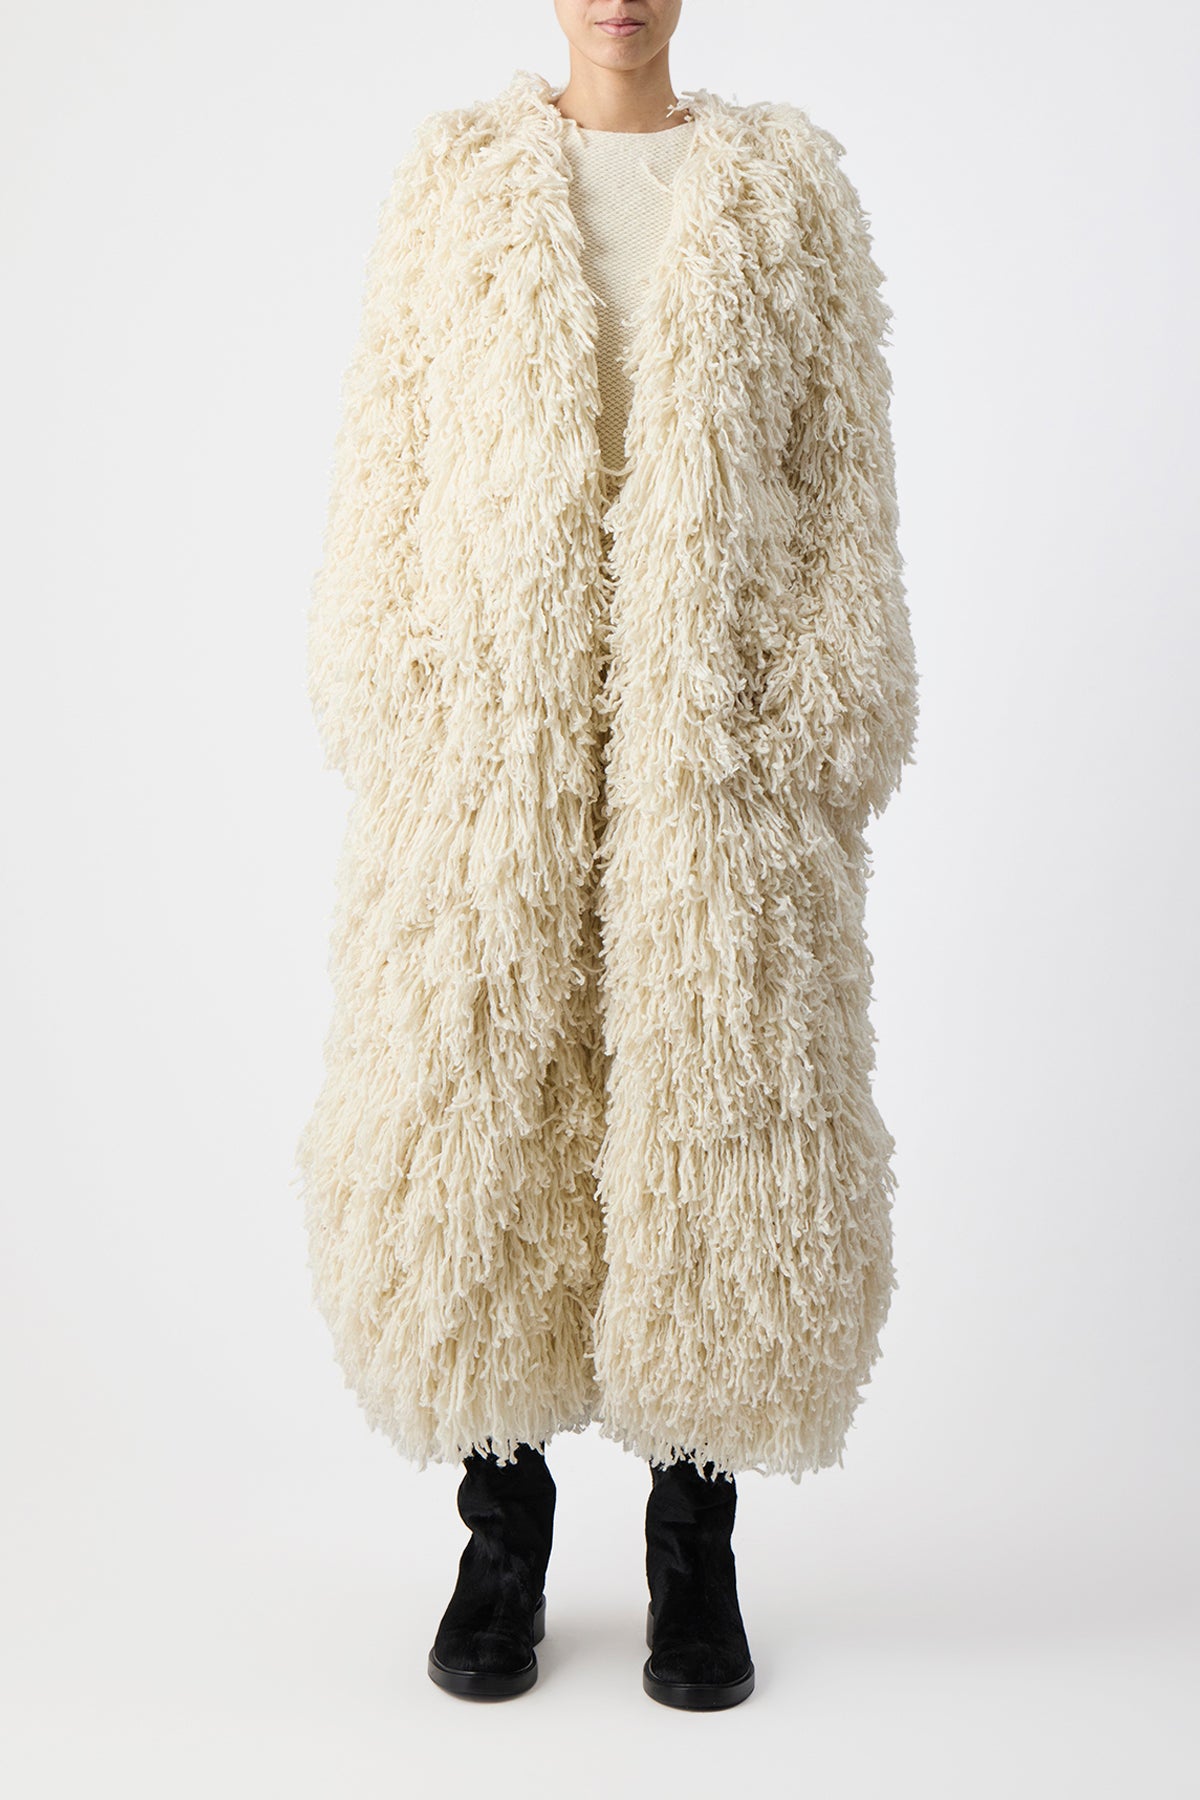 Jantzen Knit Coat in Ivory Virgin Wool Cashmere Silk